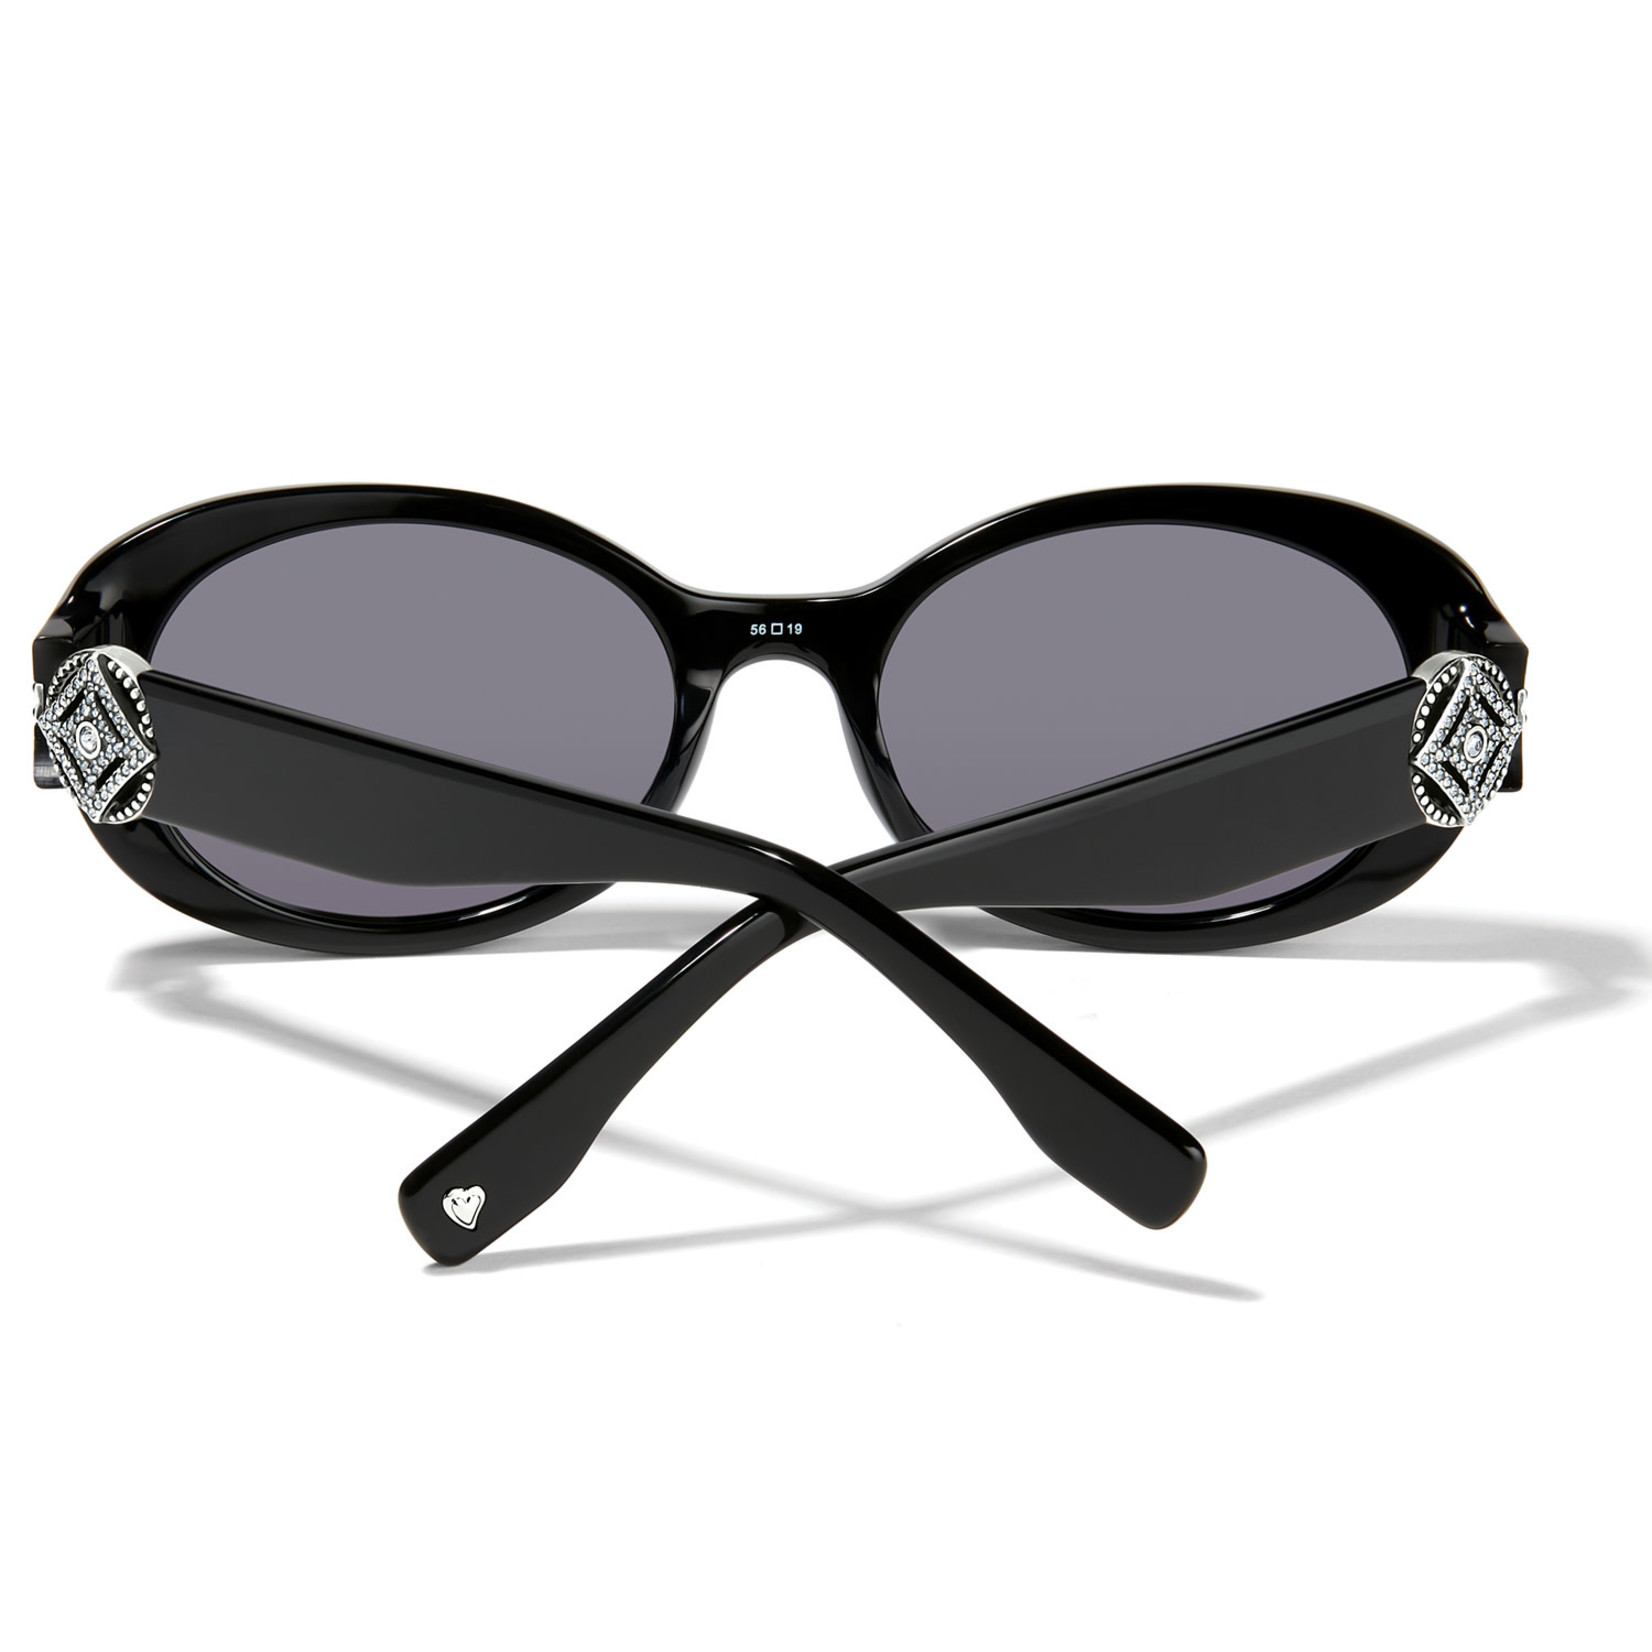 Brighton Illumina Diamond Sunglasses